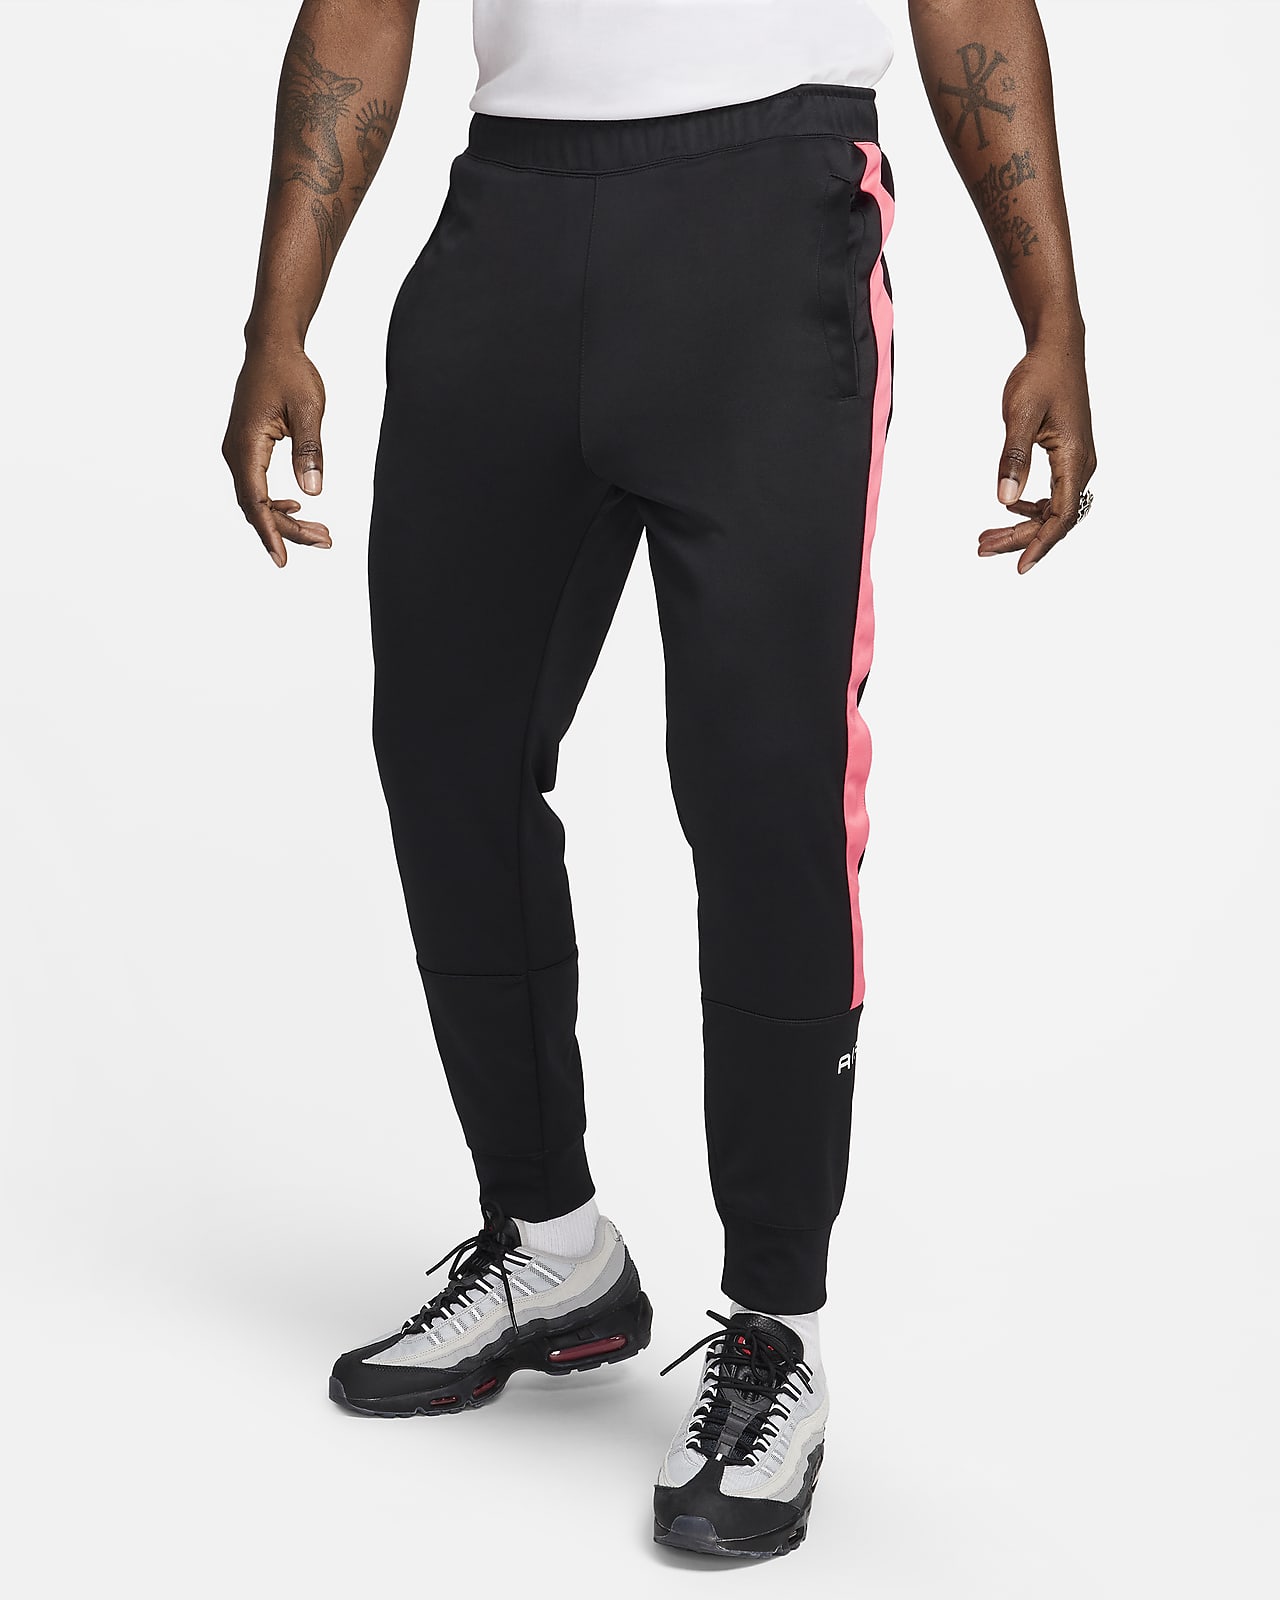 Pantalon de jogging Nike Air pour homme